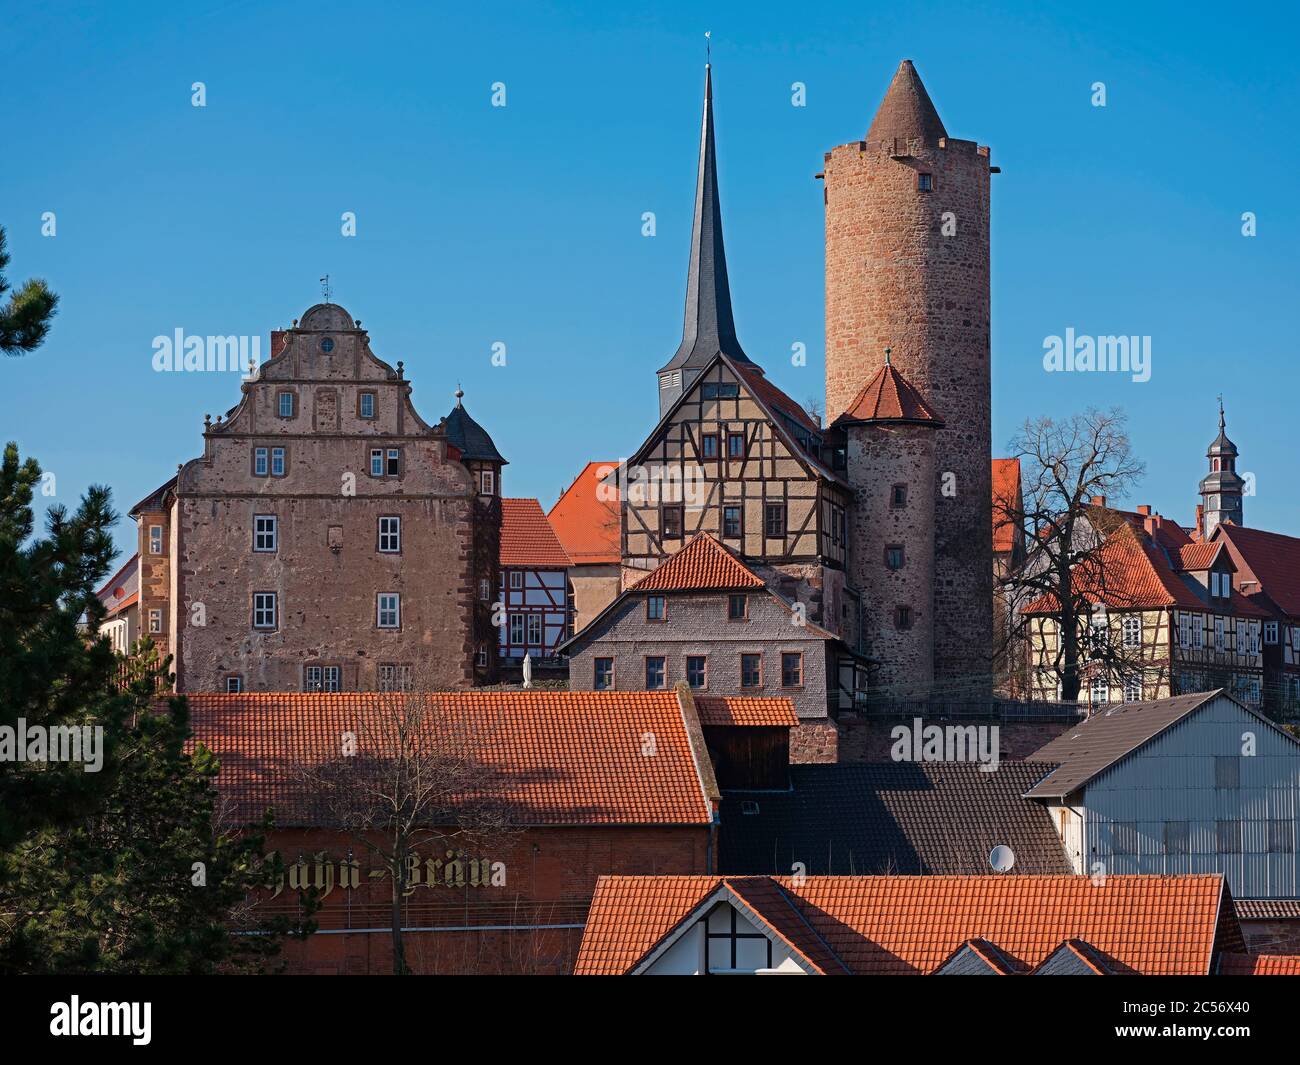 Hinterburg mit Hinterturm is one of 5 castles in the town of Schlitz, Vogelsbergkreis, Mittelhessen, Germany Stock Photo